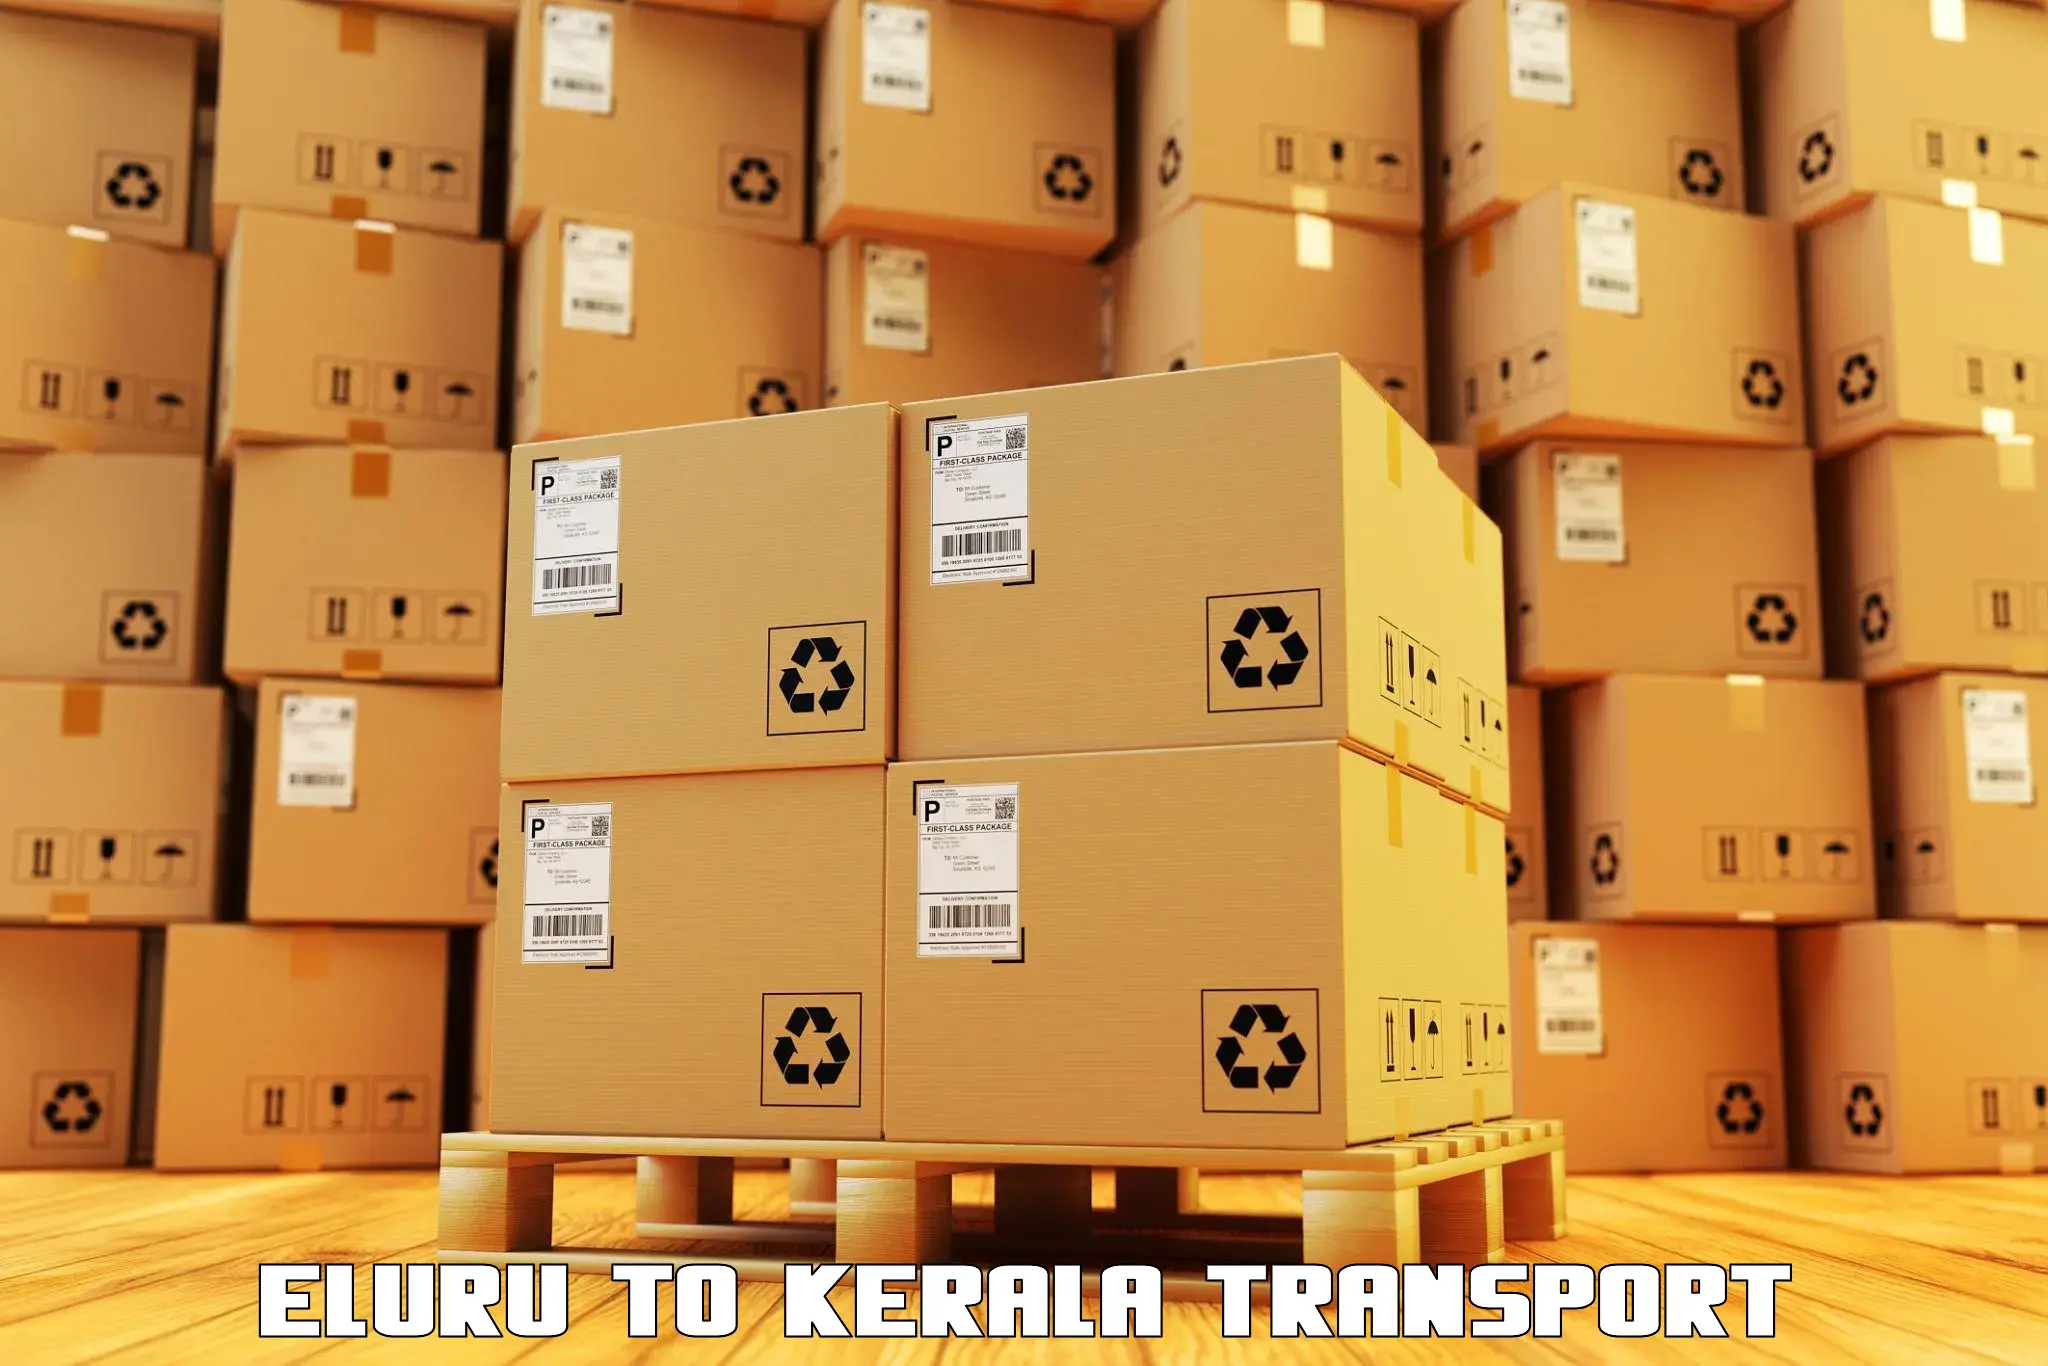 Online transport booking Eluru to Karimba